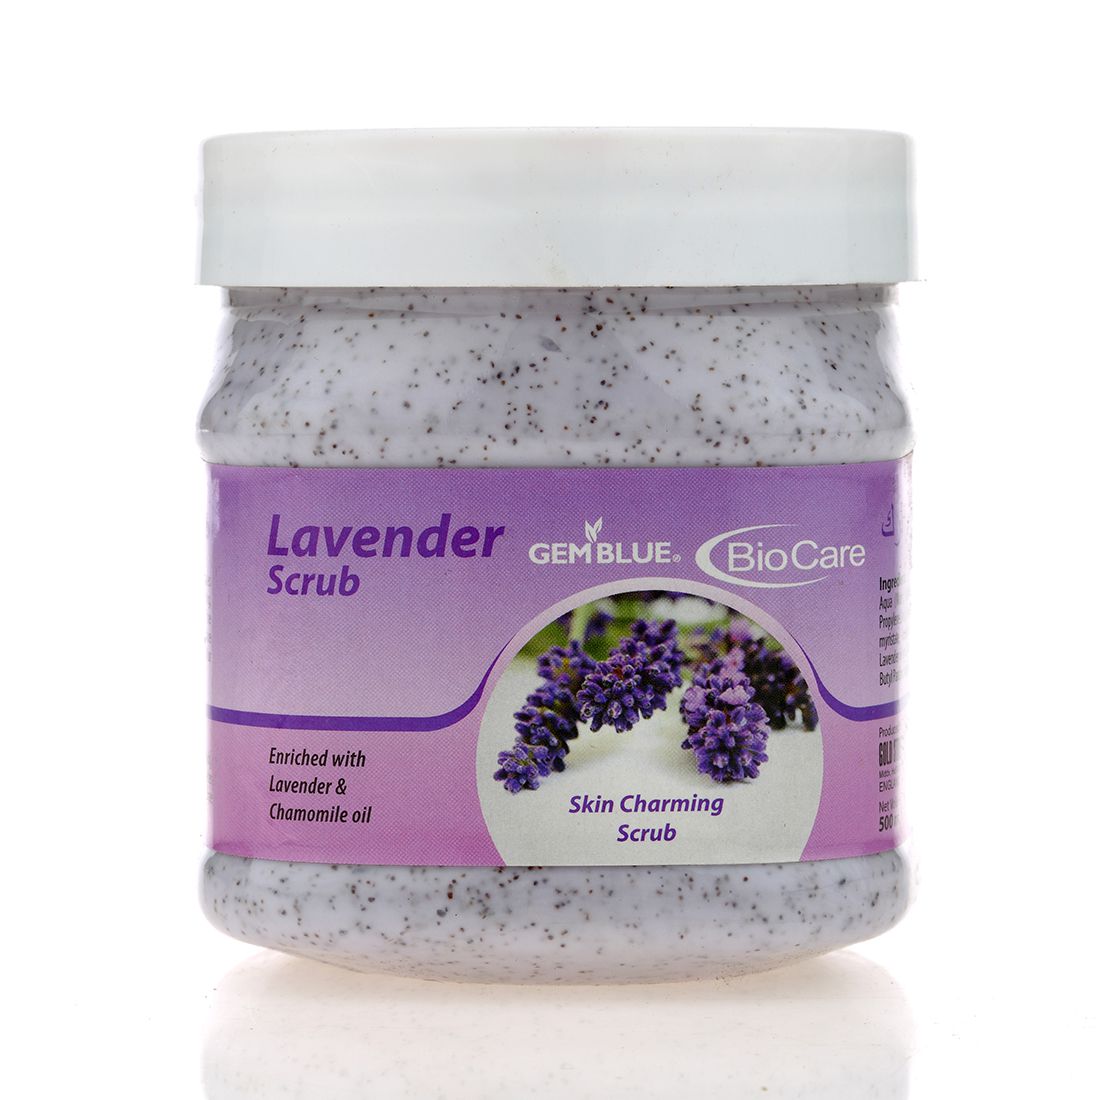     			gemblue biocare Lavender Facial Scrub 500 ml